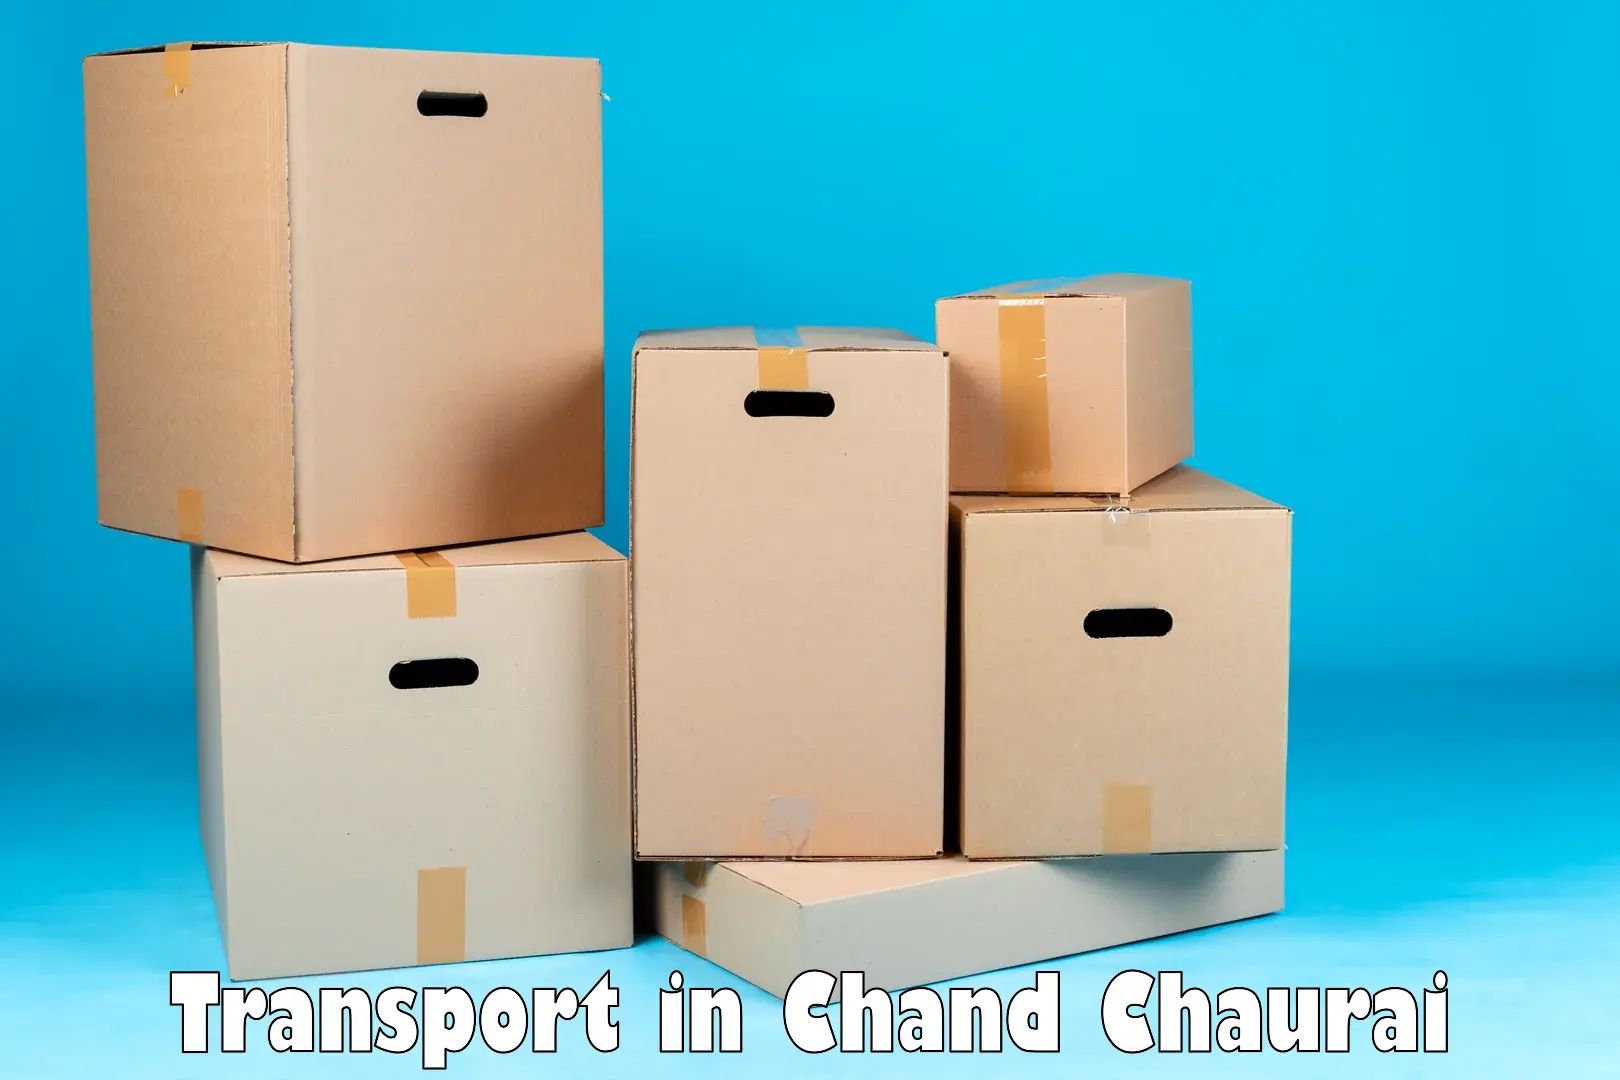 Online transport service in Chand Chaurai